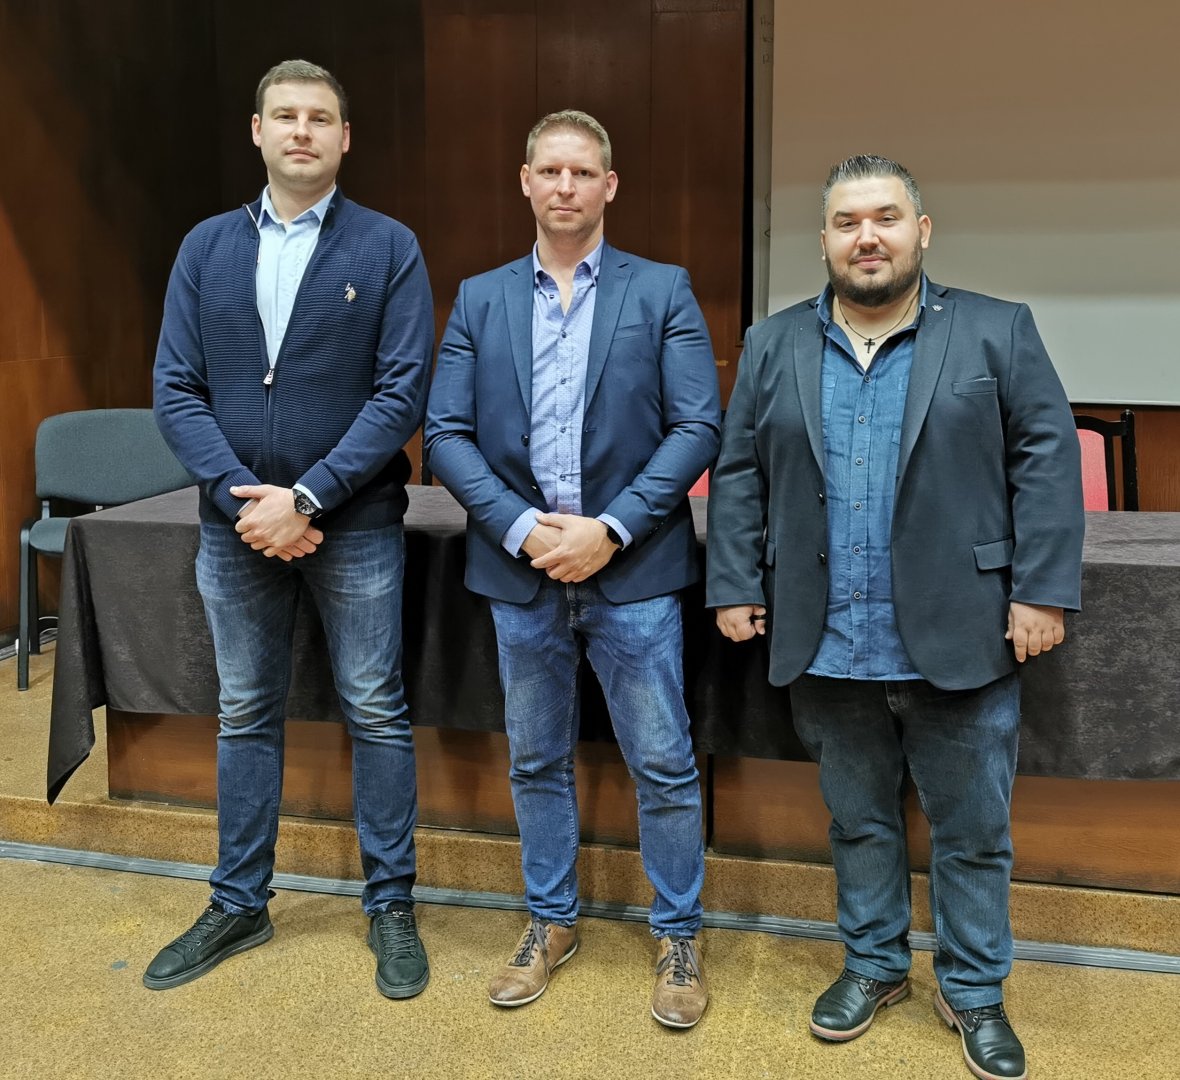 Д-р Павел Минев (вляво), д-р Стамен Пишев (в средата) и д-р Диян Господинов (вдясно) са избрани в ръководството на организацията